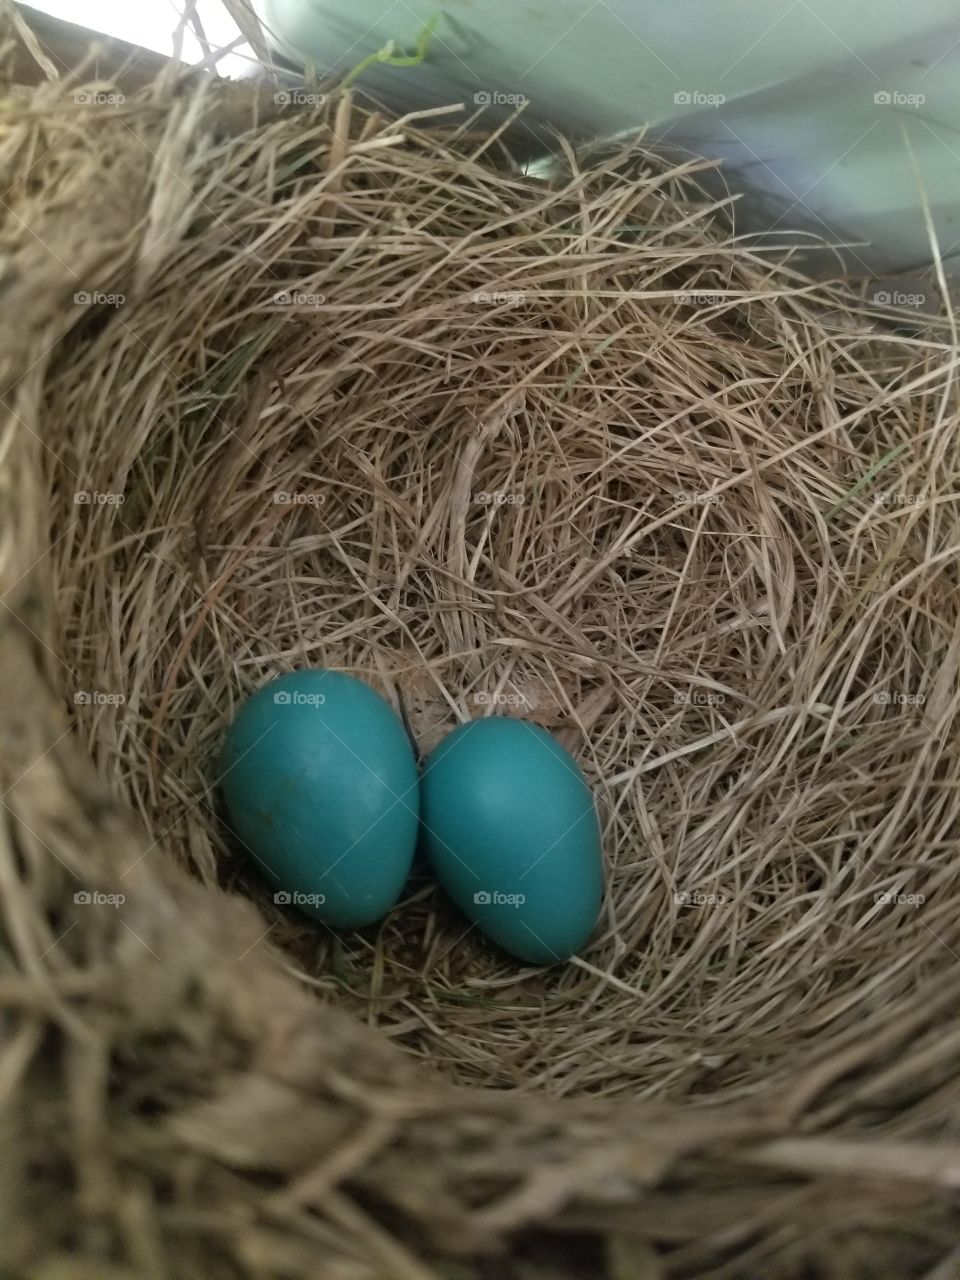 Blue eggs in nest